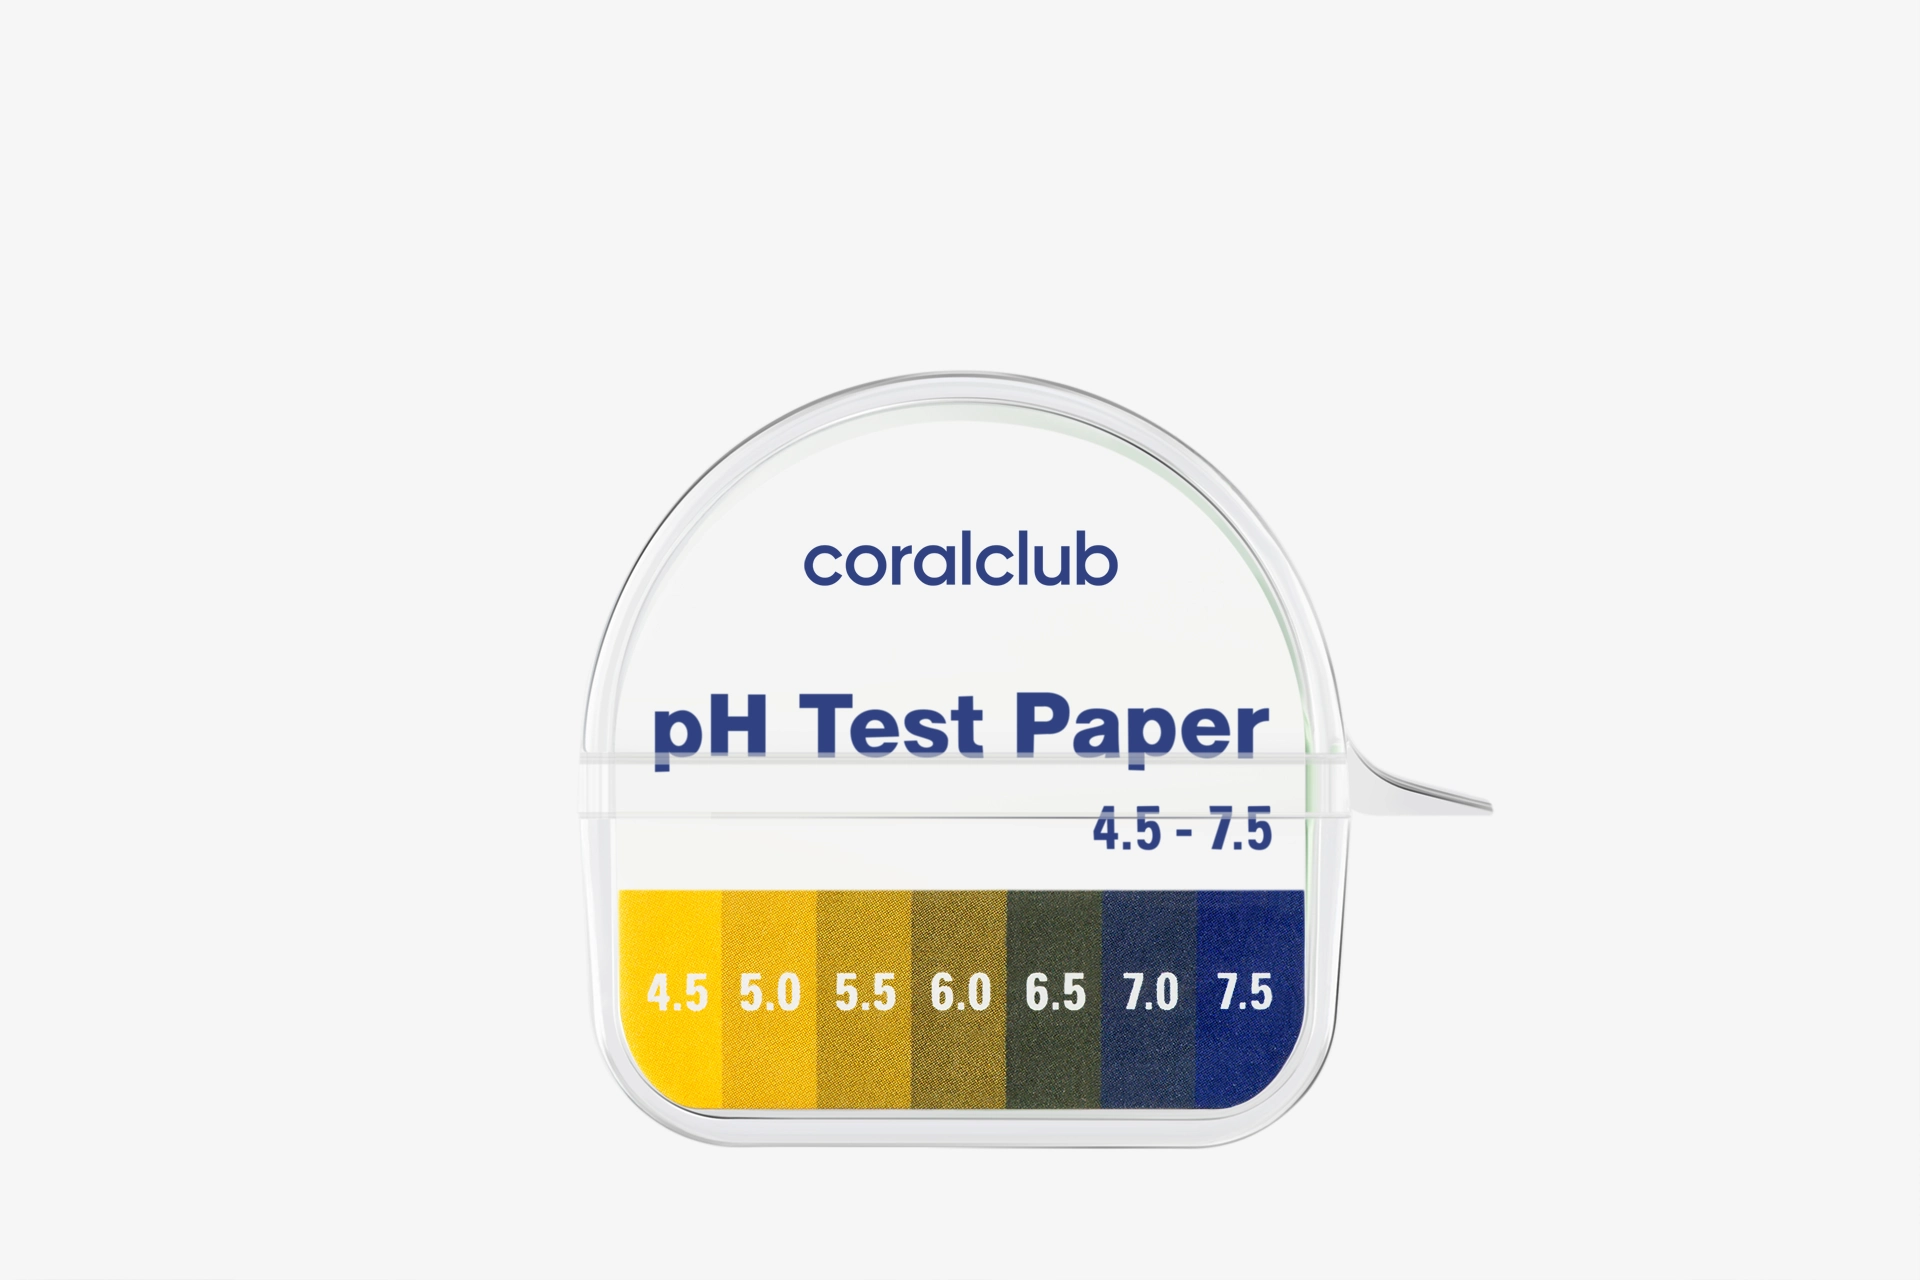 Indikátorové pH papírky